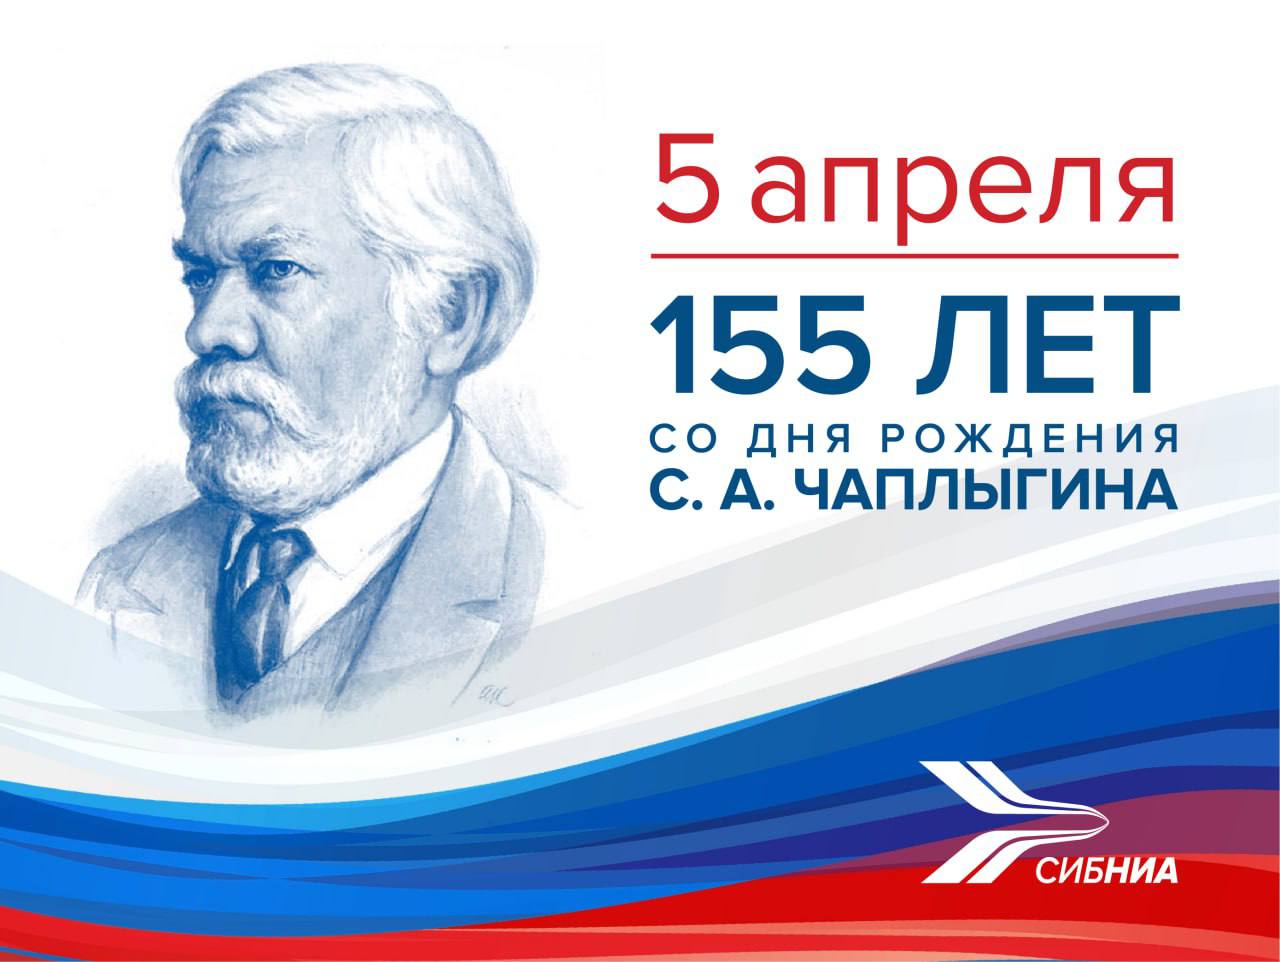 Поздравление директора СибНИА к 155-летию со дня рождения Сергея Алексеевича Чаплыгина